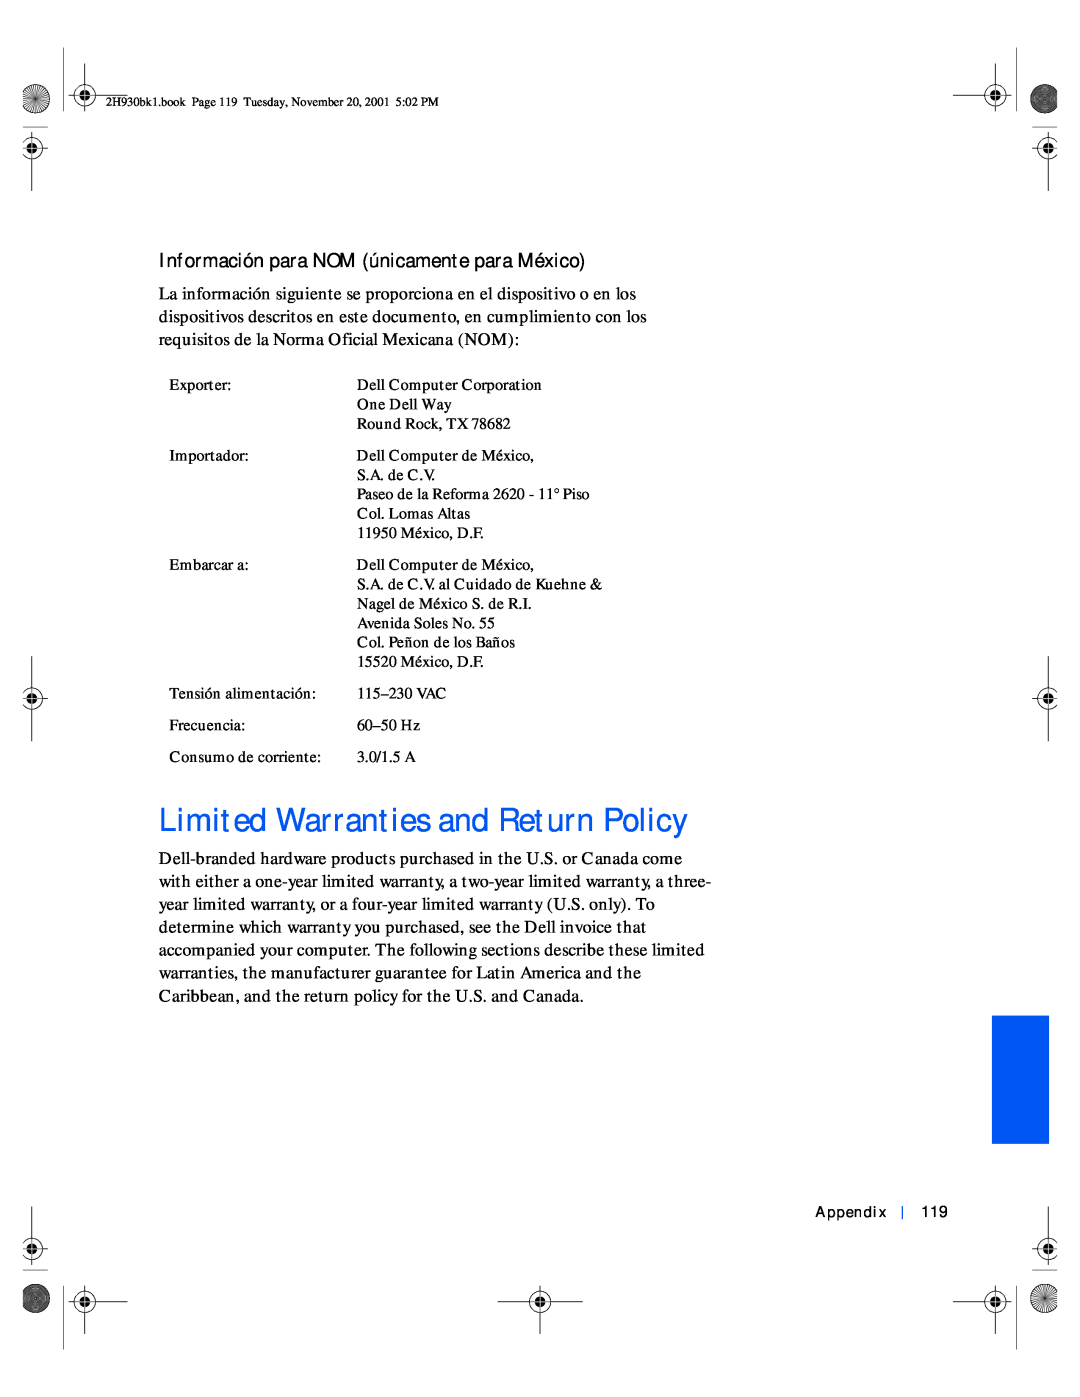 Dell 4300 manual Limited Warranties and Return Policy, Información para NOM únicamente para México 